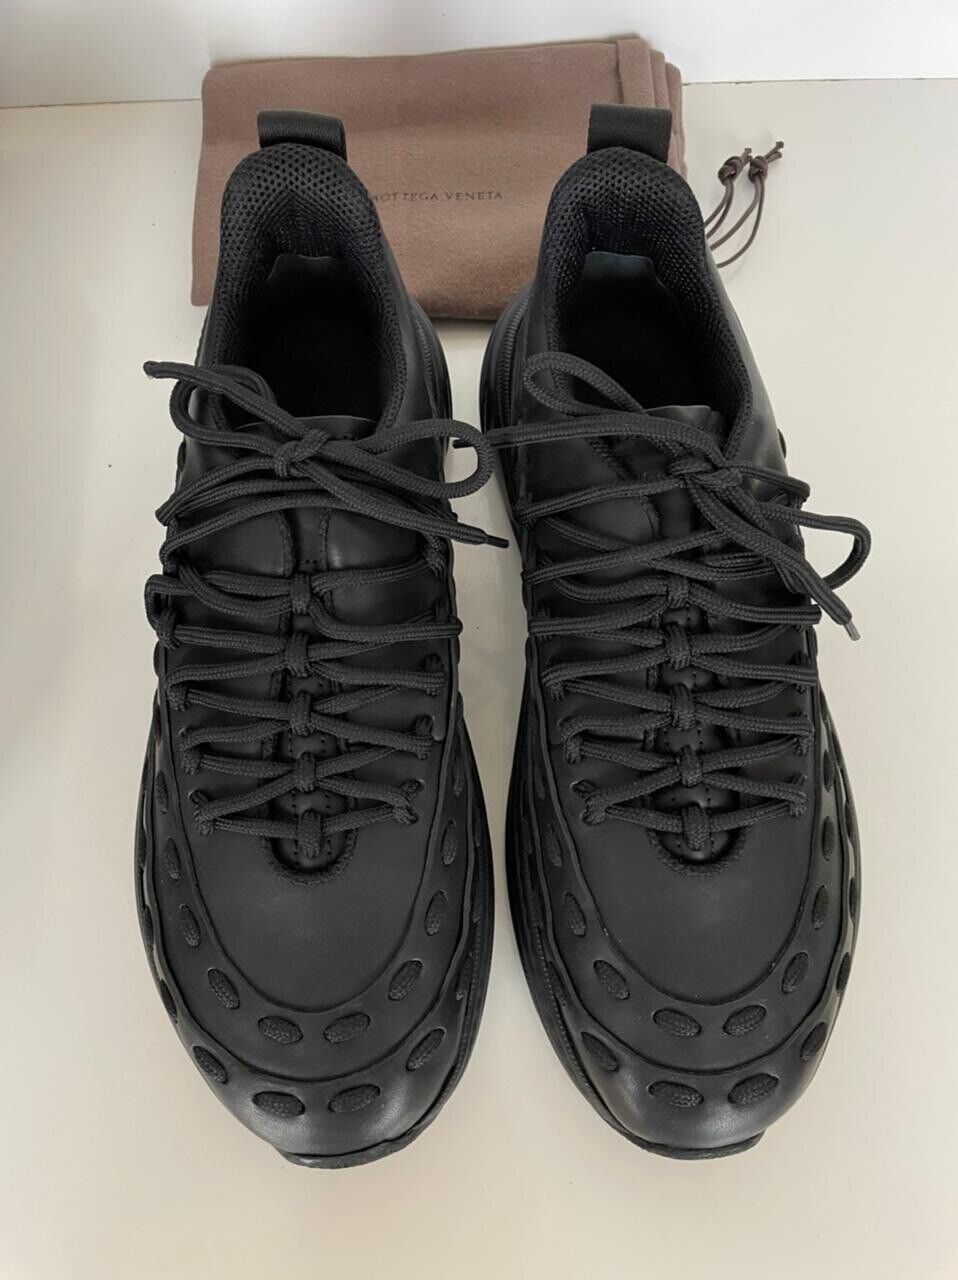 Мужские кожаные черные кроссовки Bottega Veneta стоимостью 950 долларов США 10,5 США (43,5 евро) 578305